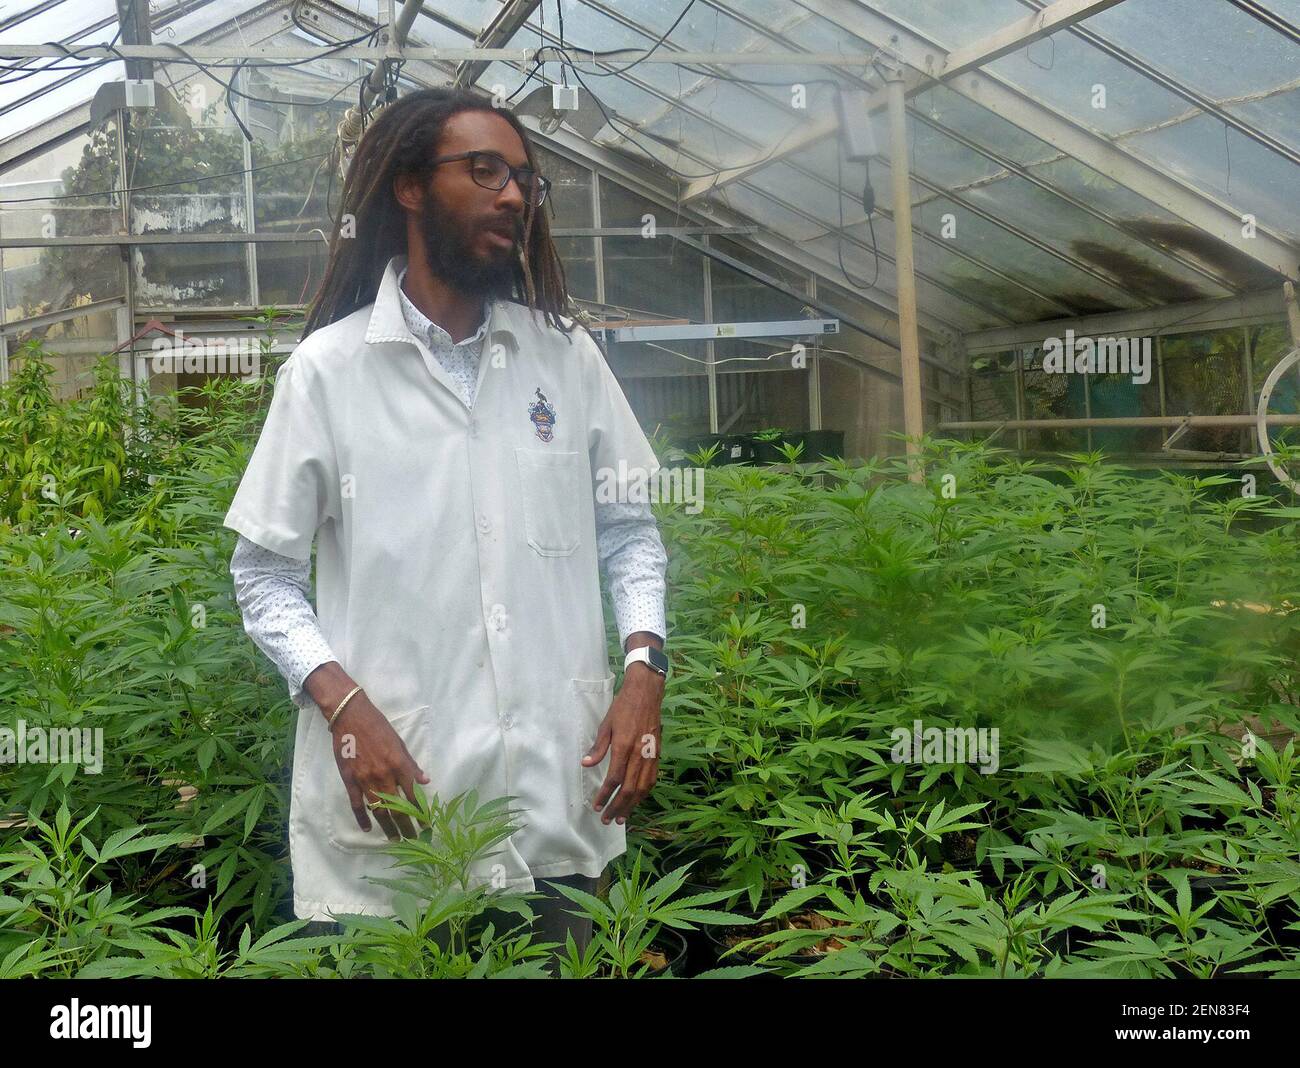 Machel Emanuel ha una serra presso il campus della Monna dell'Università delle Indie Occidentali, dove sta ricercando ceppi di marijuana. (Foto di Jacqueline Charles/Miami Herald/TNS/Sipa USA) Foto Stock